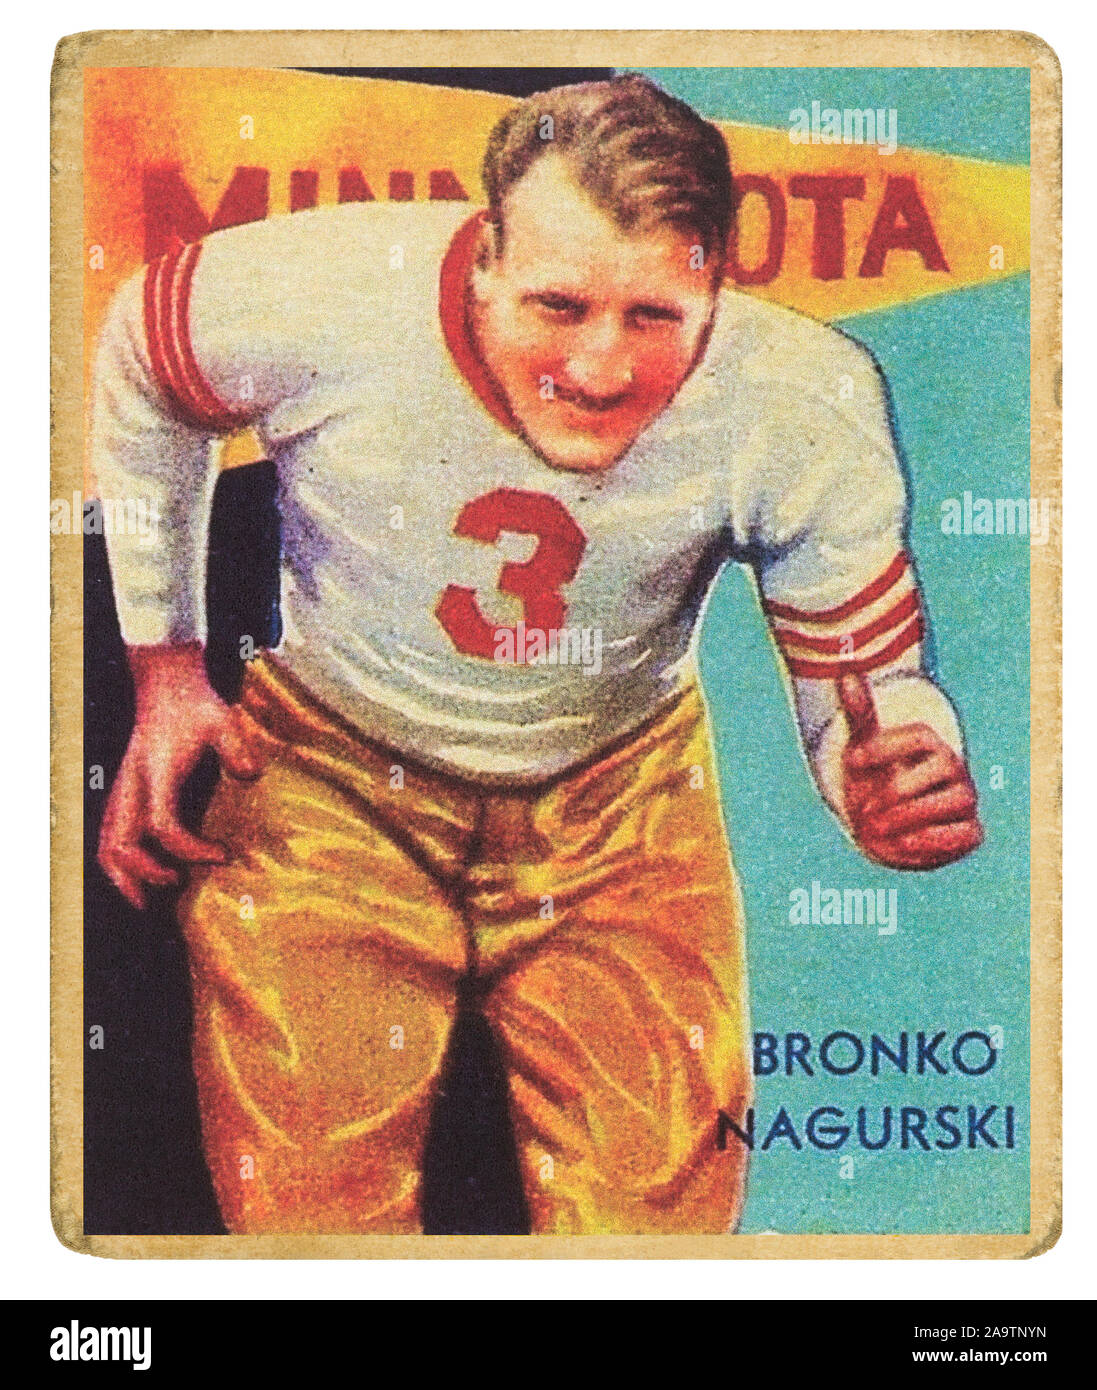 Ancien joueur de football de l'Université du Minnesota Bronko Nagurski sur une nationale 1935 Chicle Co. foot carte. Bronislau Bronko Nagurski est présenté comme un Banque D'Images